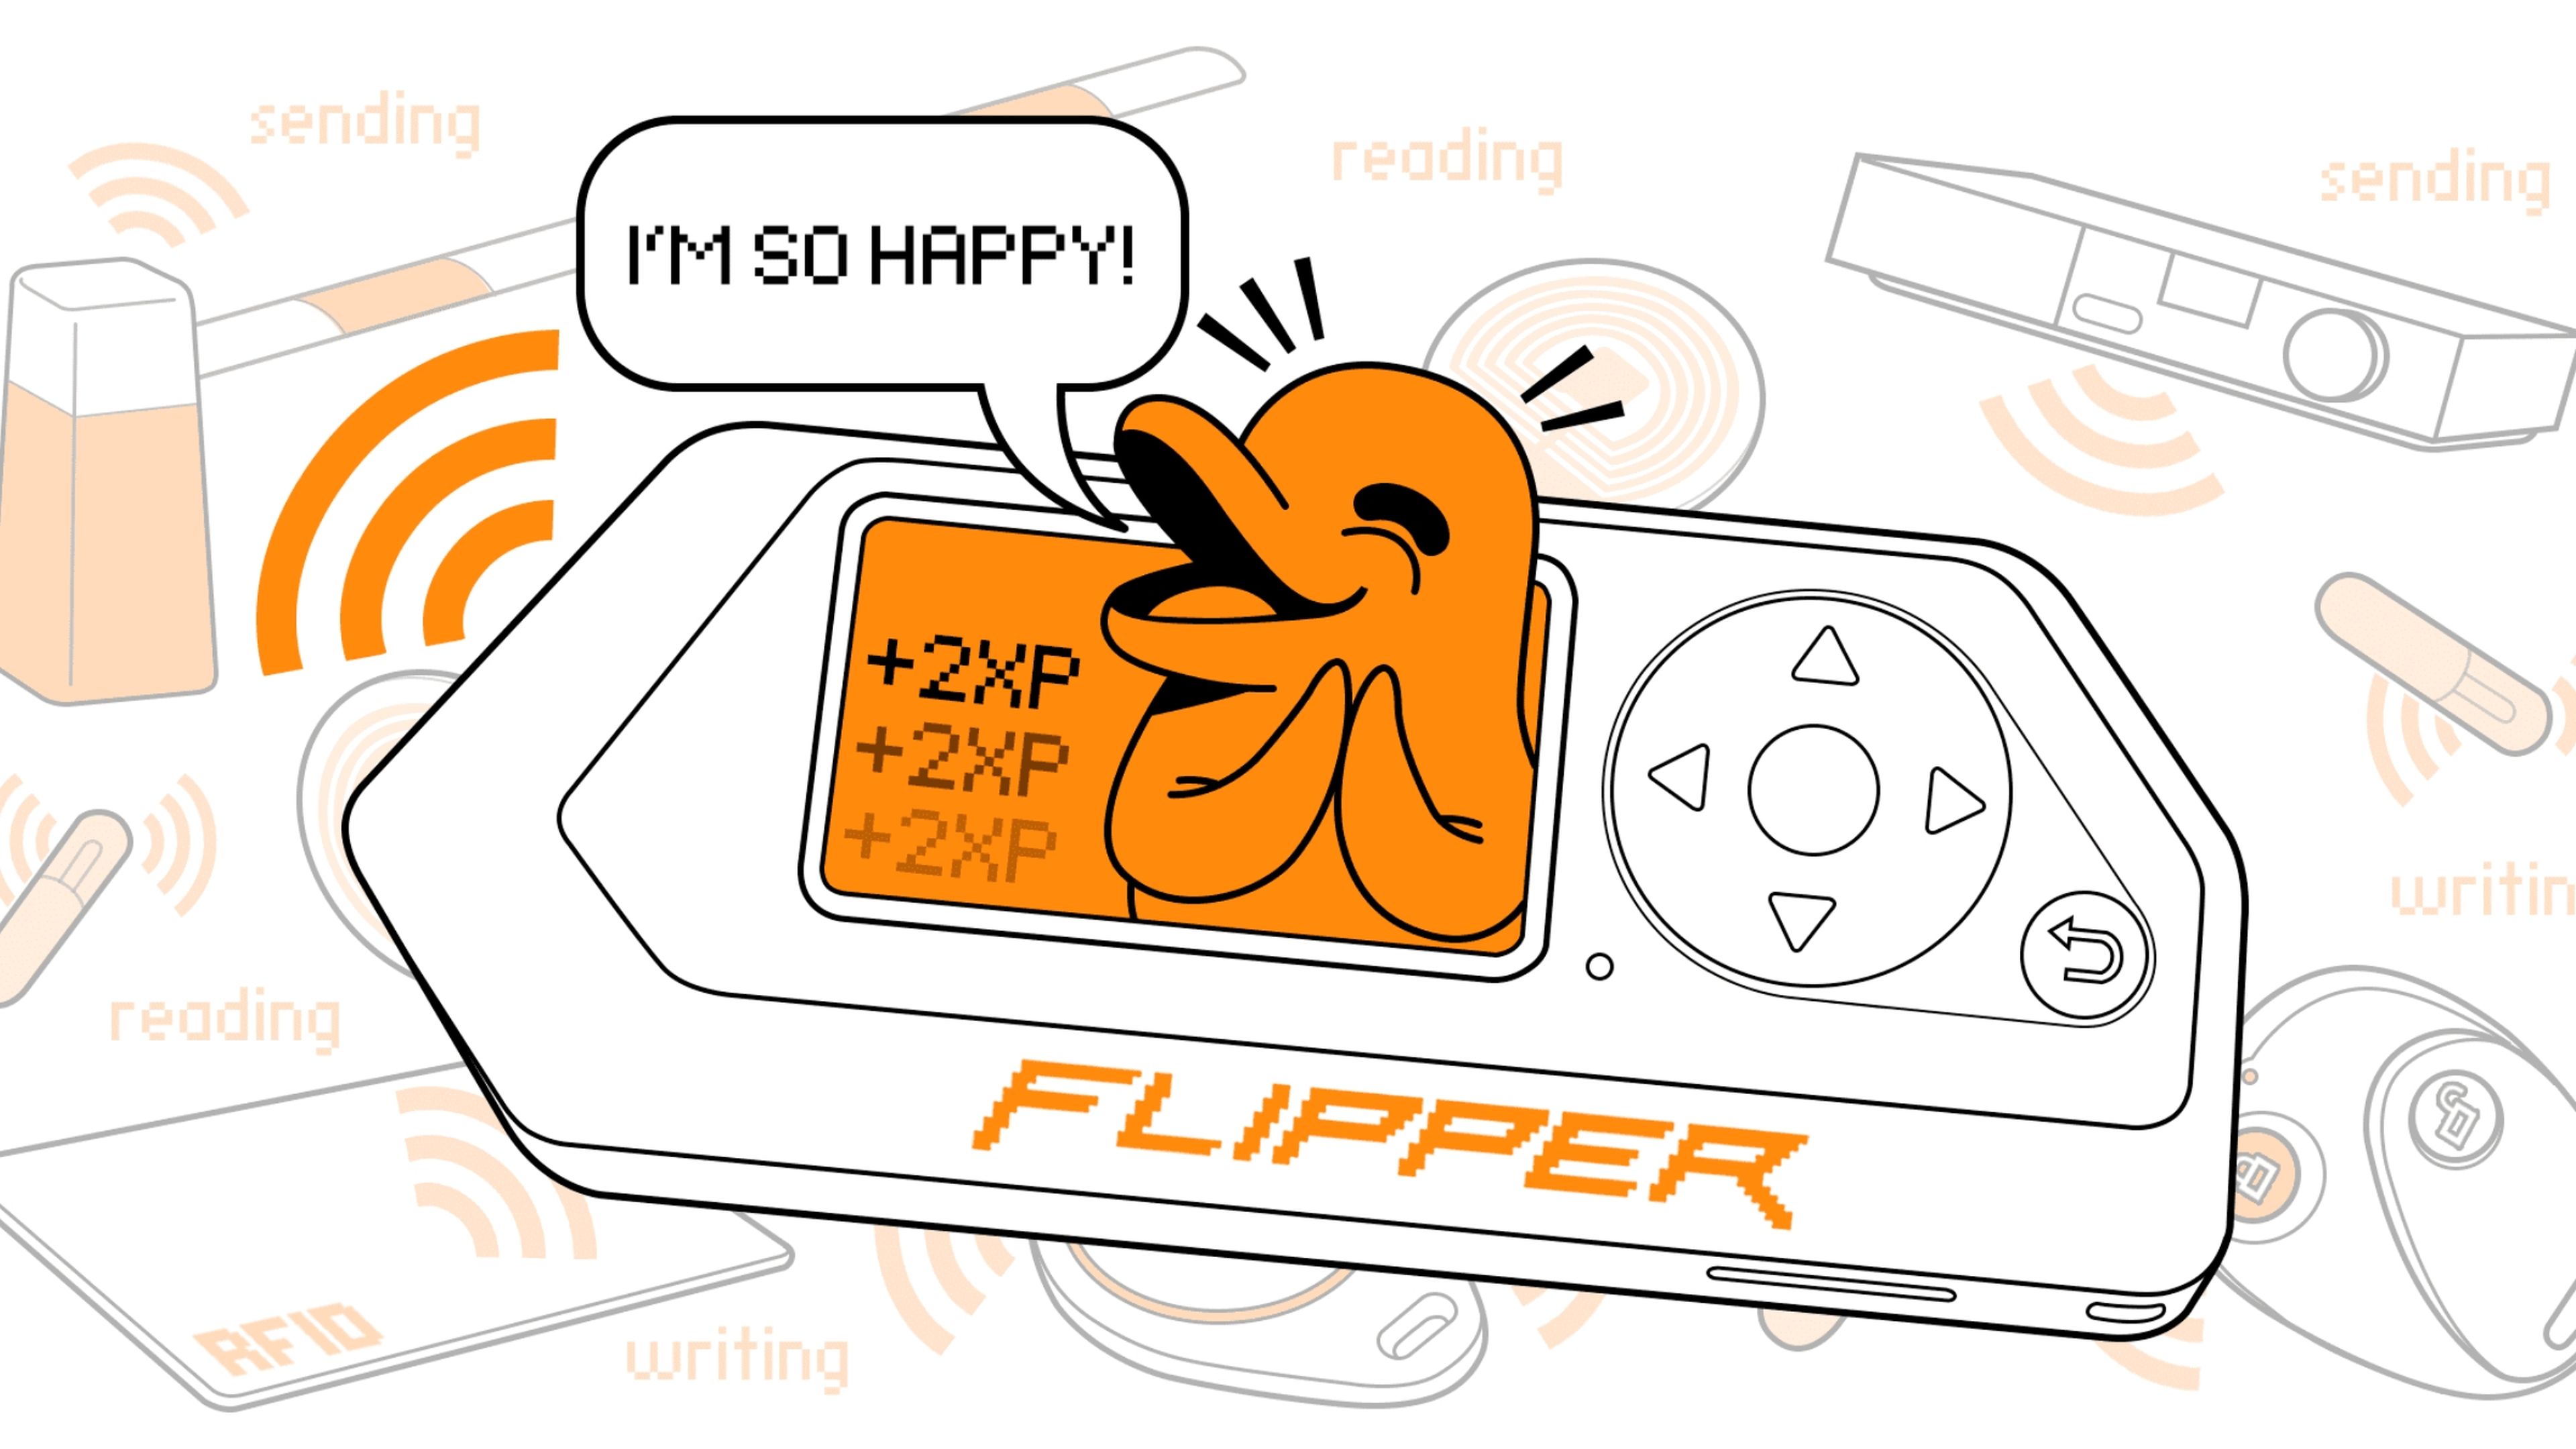 Flipper Zero: Análisis de este dispositivo de hacking ético